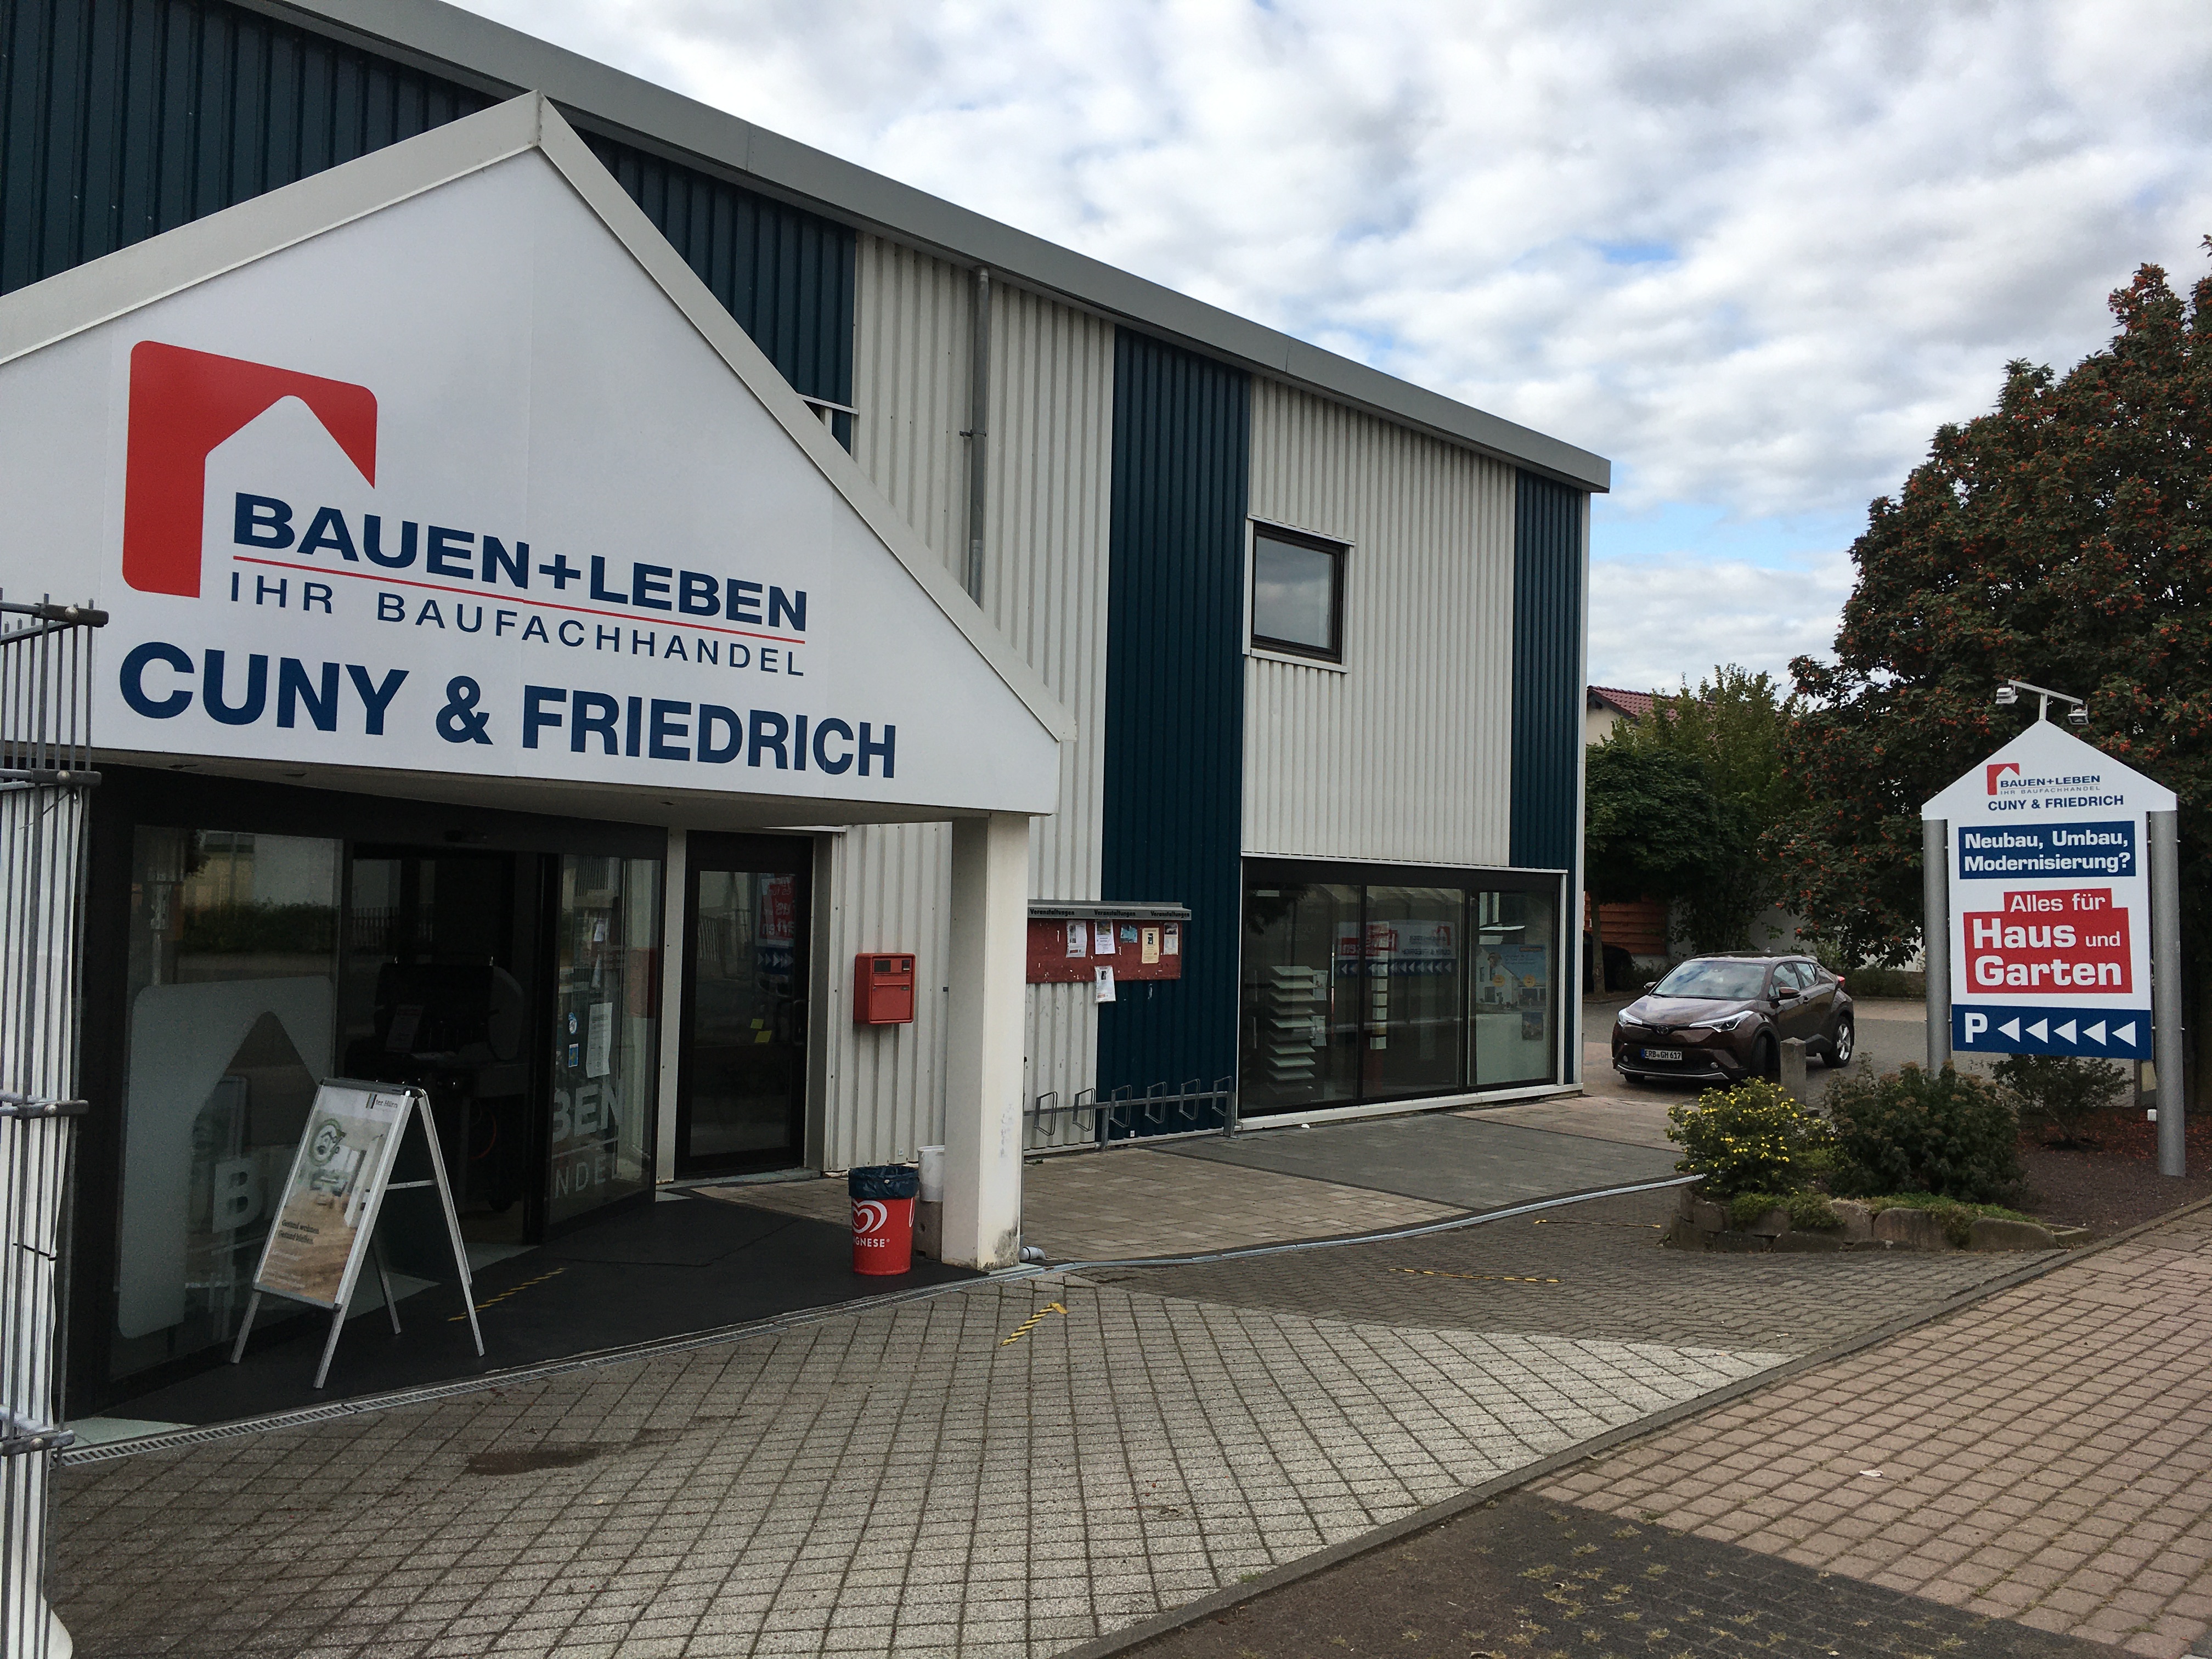 BAUEN+LEBEN - Ihr Baufachhandel | Cuny & Friedrich GmbH Bauzentrum, Schillerstraße 11 in Reinheim